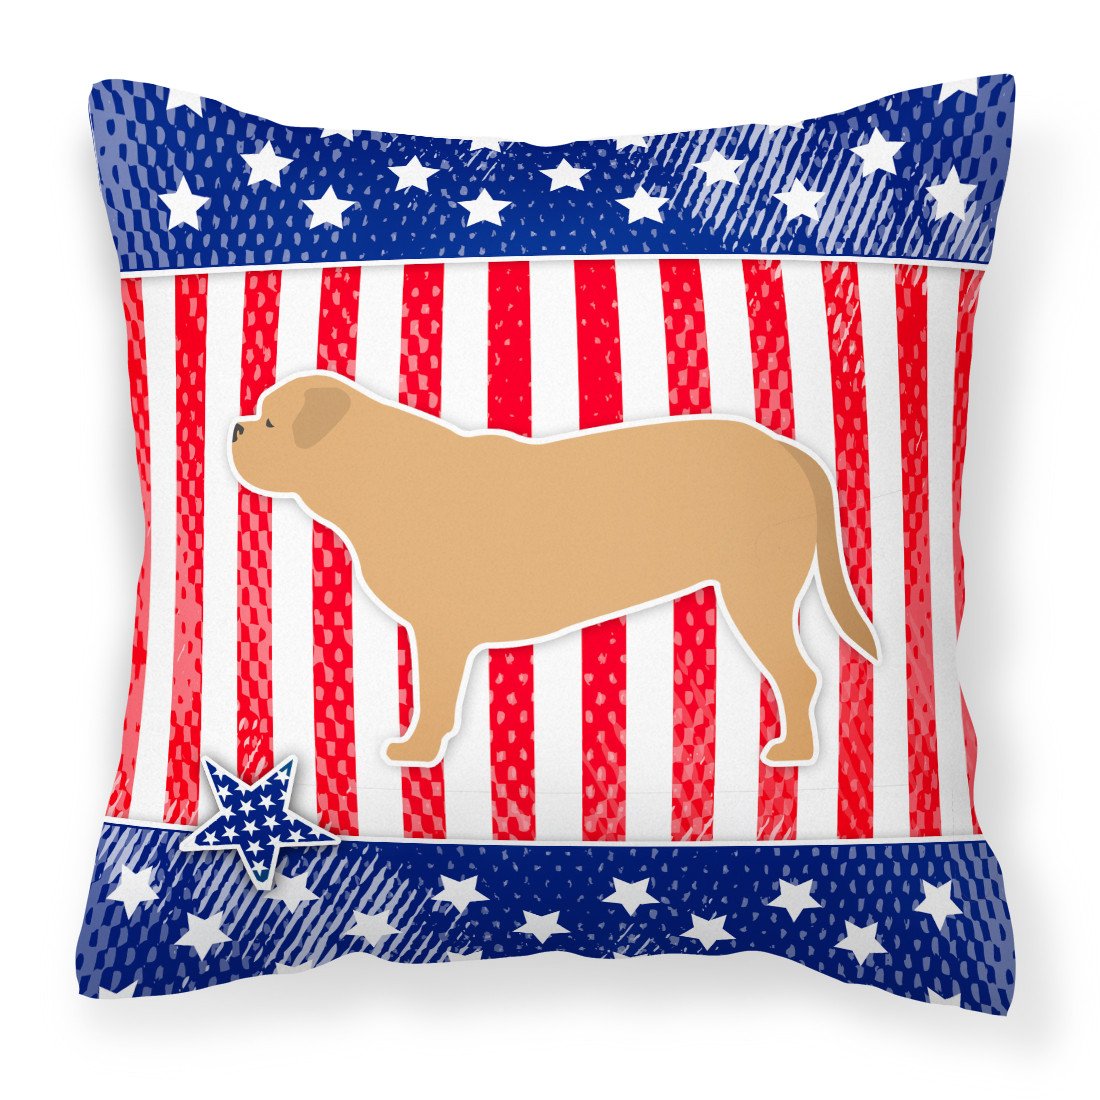 USA Patriotic Dogue de Bordeaux Fabric Decorative Pillow BB3370PW1818 by Caroline's Treasures